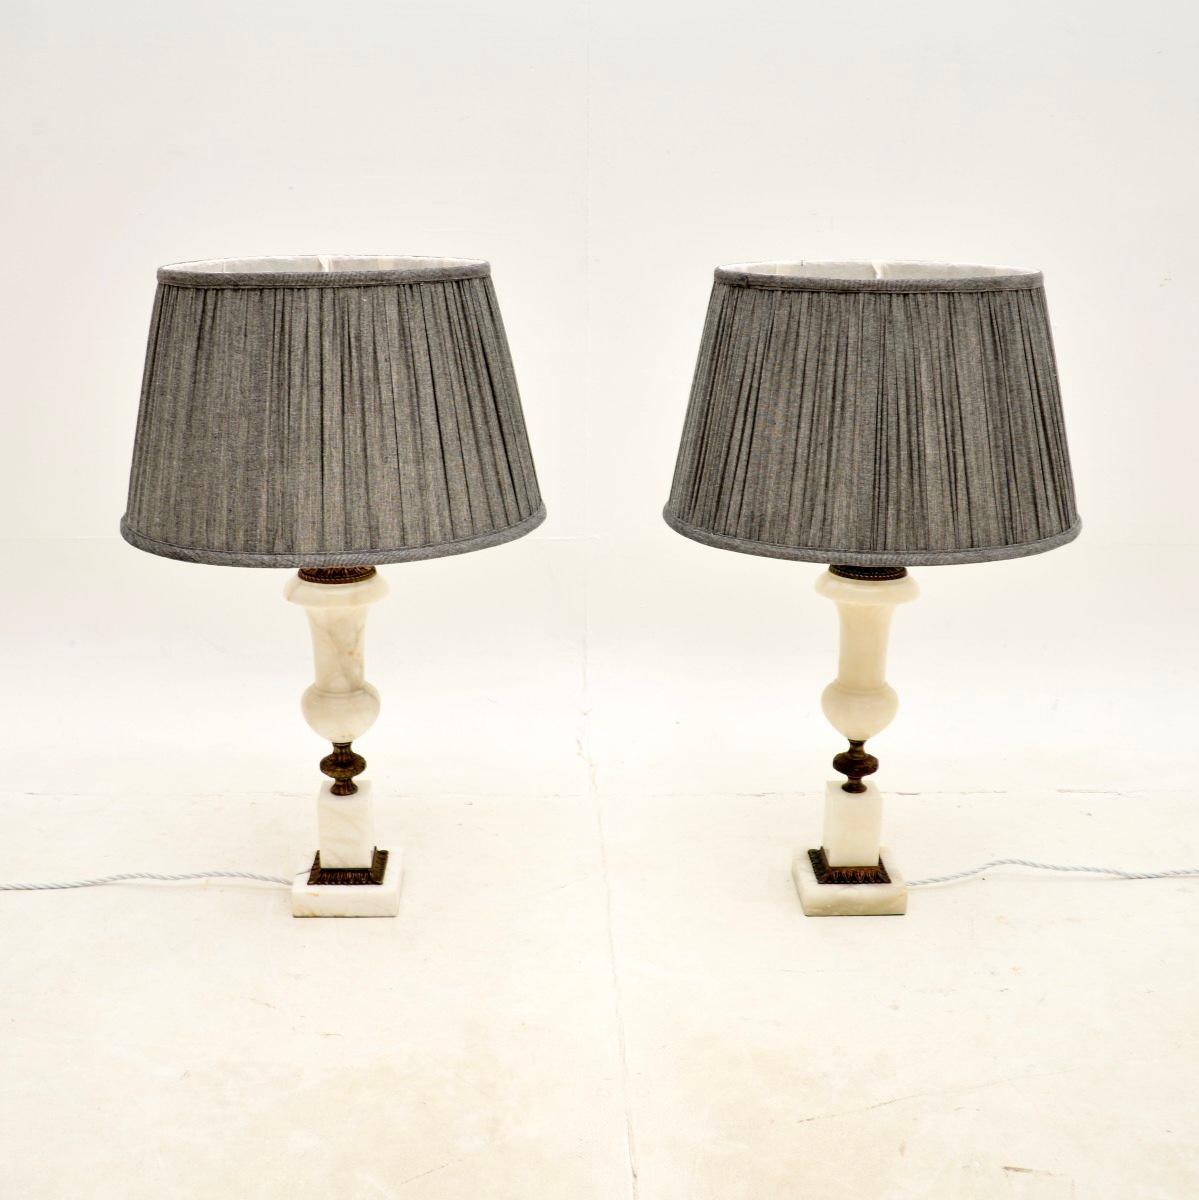 Une belle paire de lampes de table anciennes en albâtre. Elles ont probablement été fabriquées en France et datent des années 1930.

La qualité est excellente, l'albâtre est d'une belle couleur blanche traversée de tons gris. Ils sont maintenus